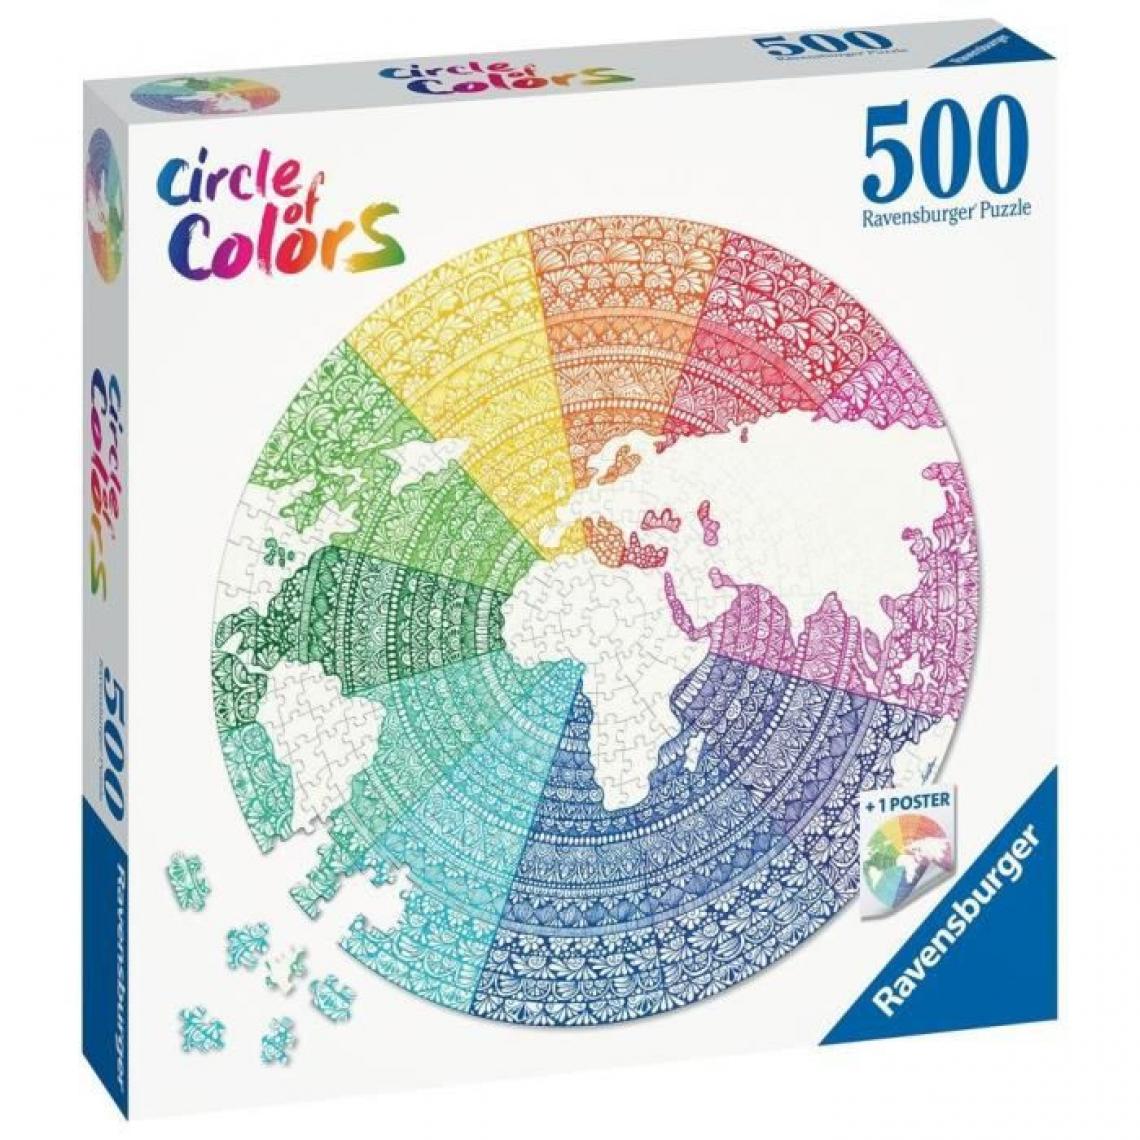 Ravensburger - Ravensburger - Puzzle rond 500 pieces - Mandala Circle of Colors - Jeux d'adresse